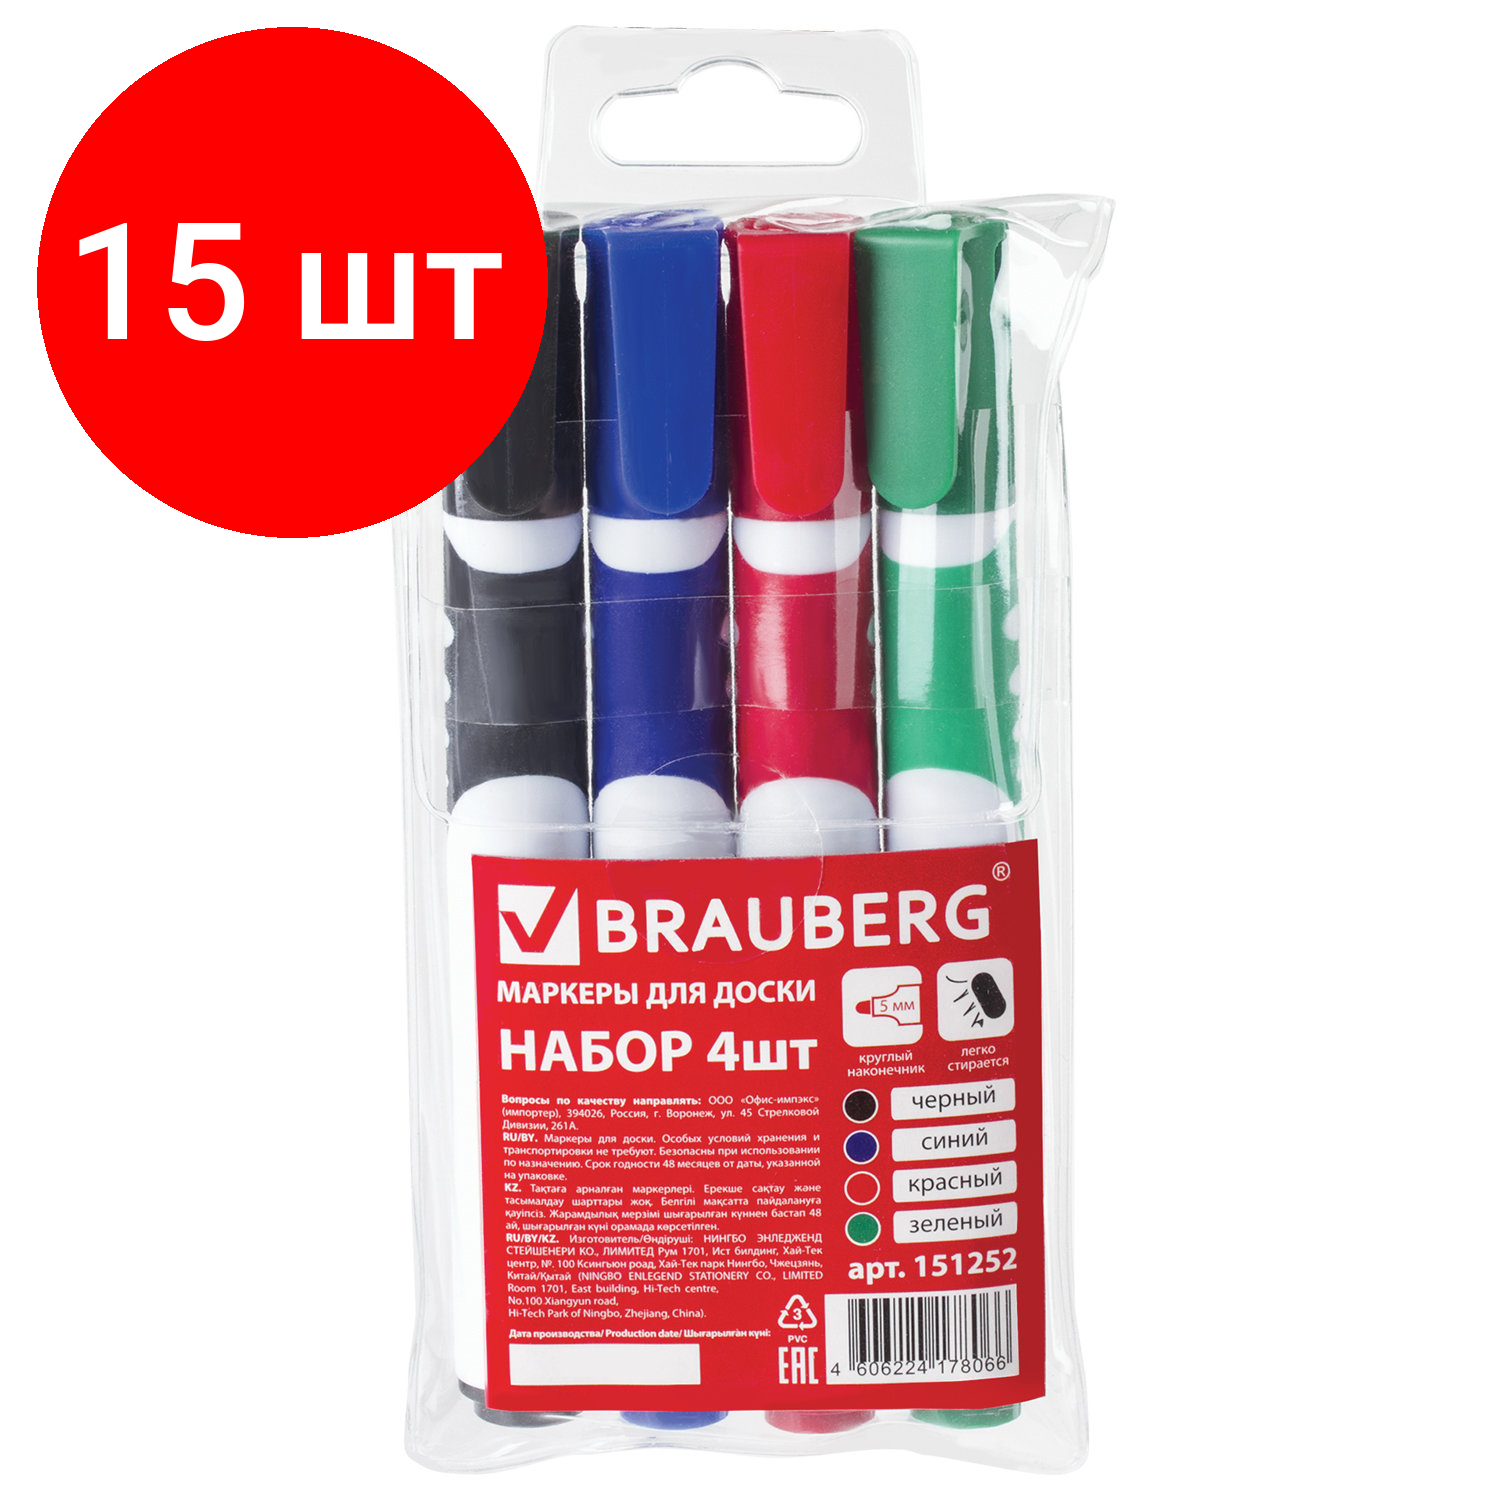 Комплект 15 шт, Маркеры стираемые для белой доски набор 4 цвета, BRAUBERG "SOFT", 5 мм, резиновая вставка, 151252